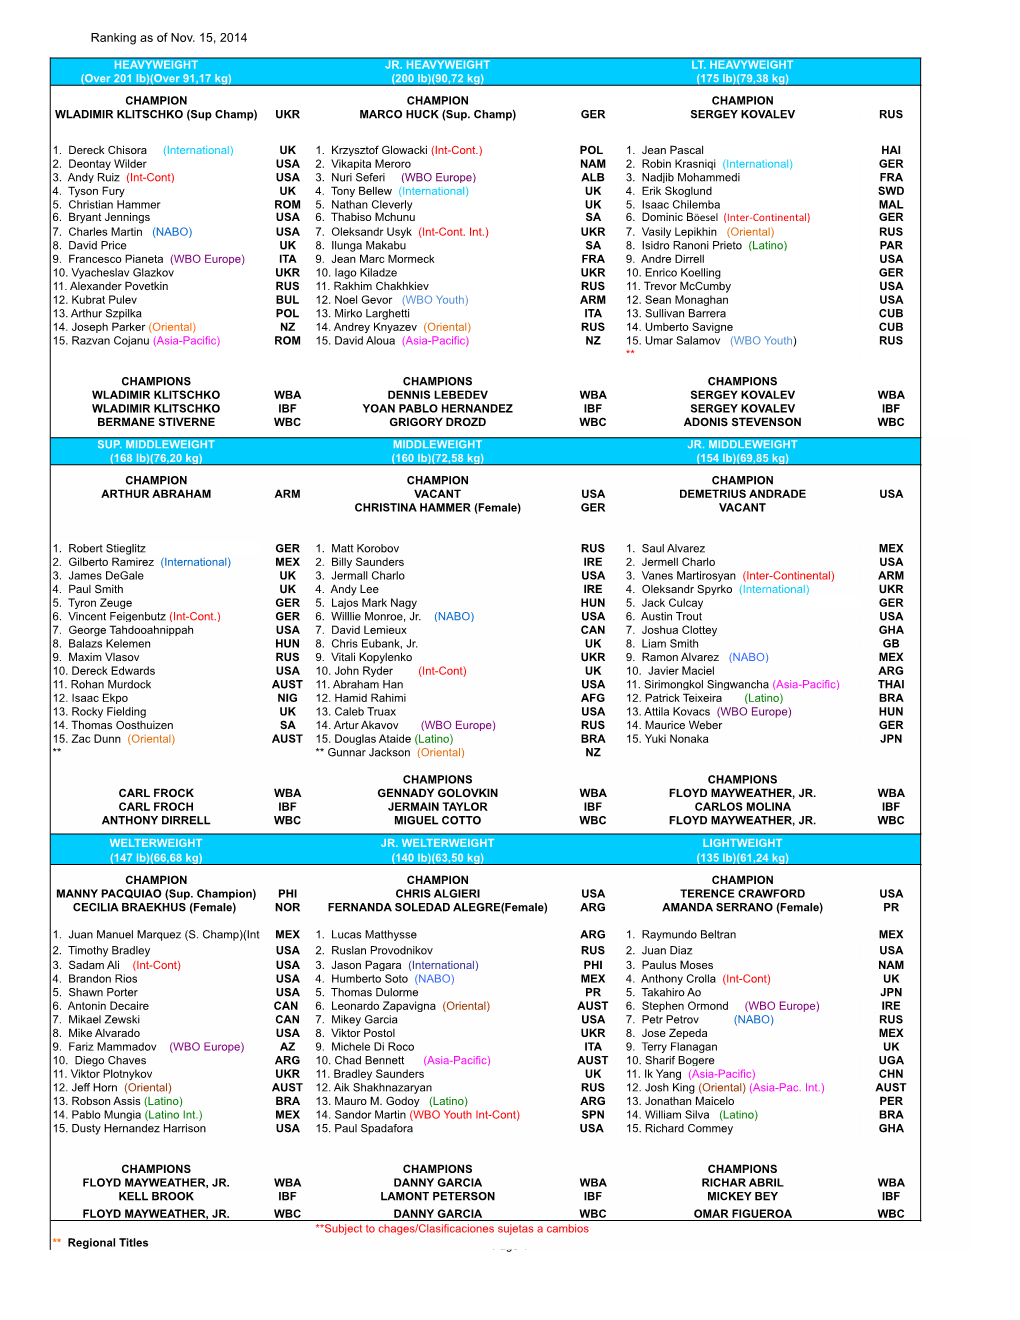 Ranking As of Nov. 15, 2014